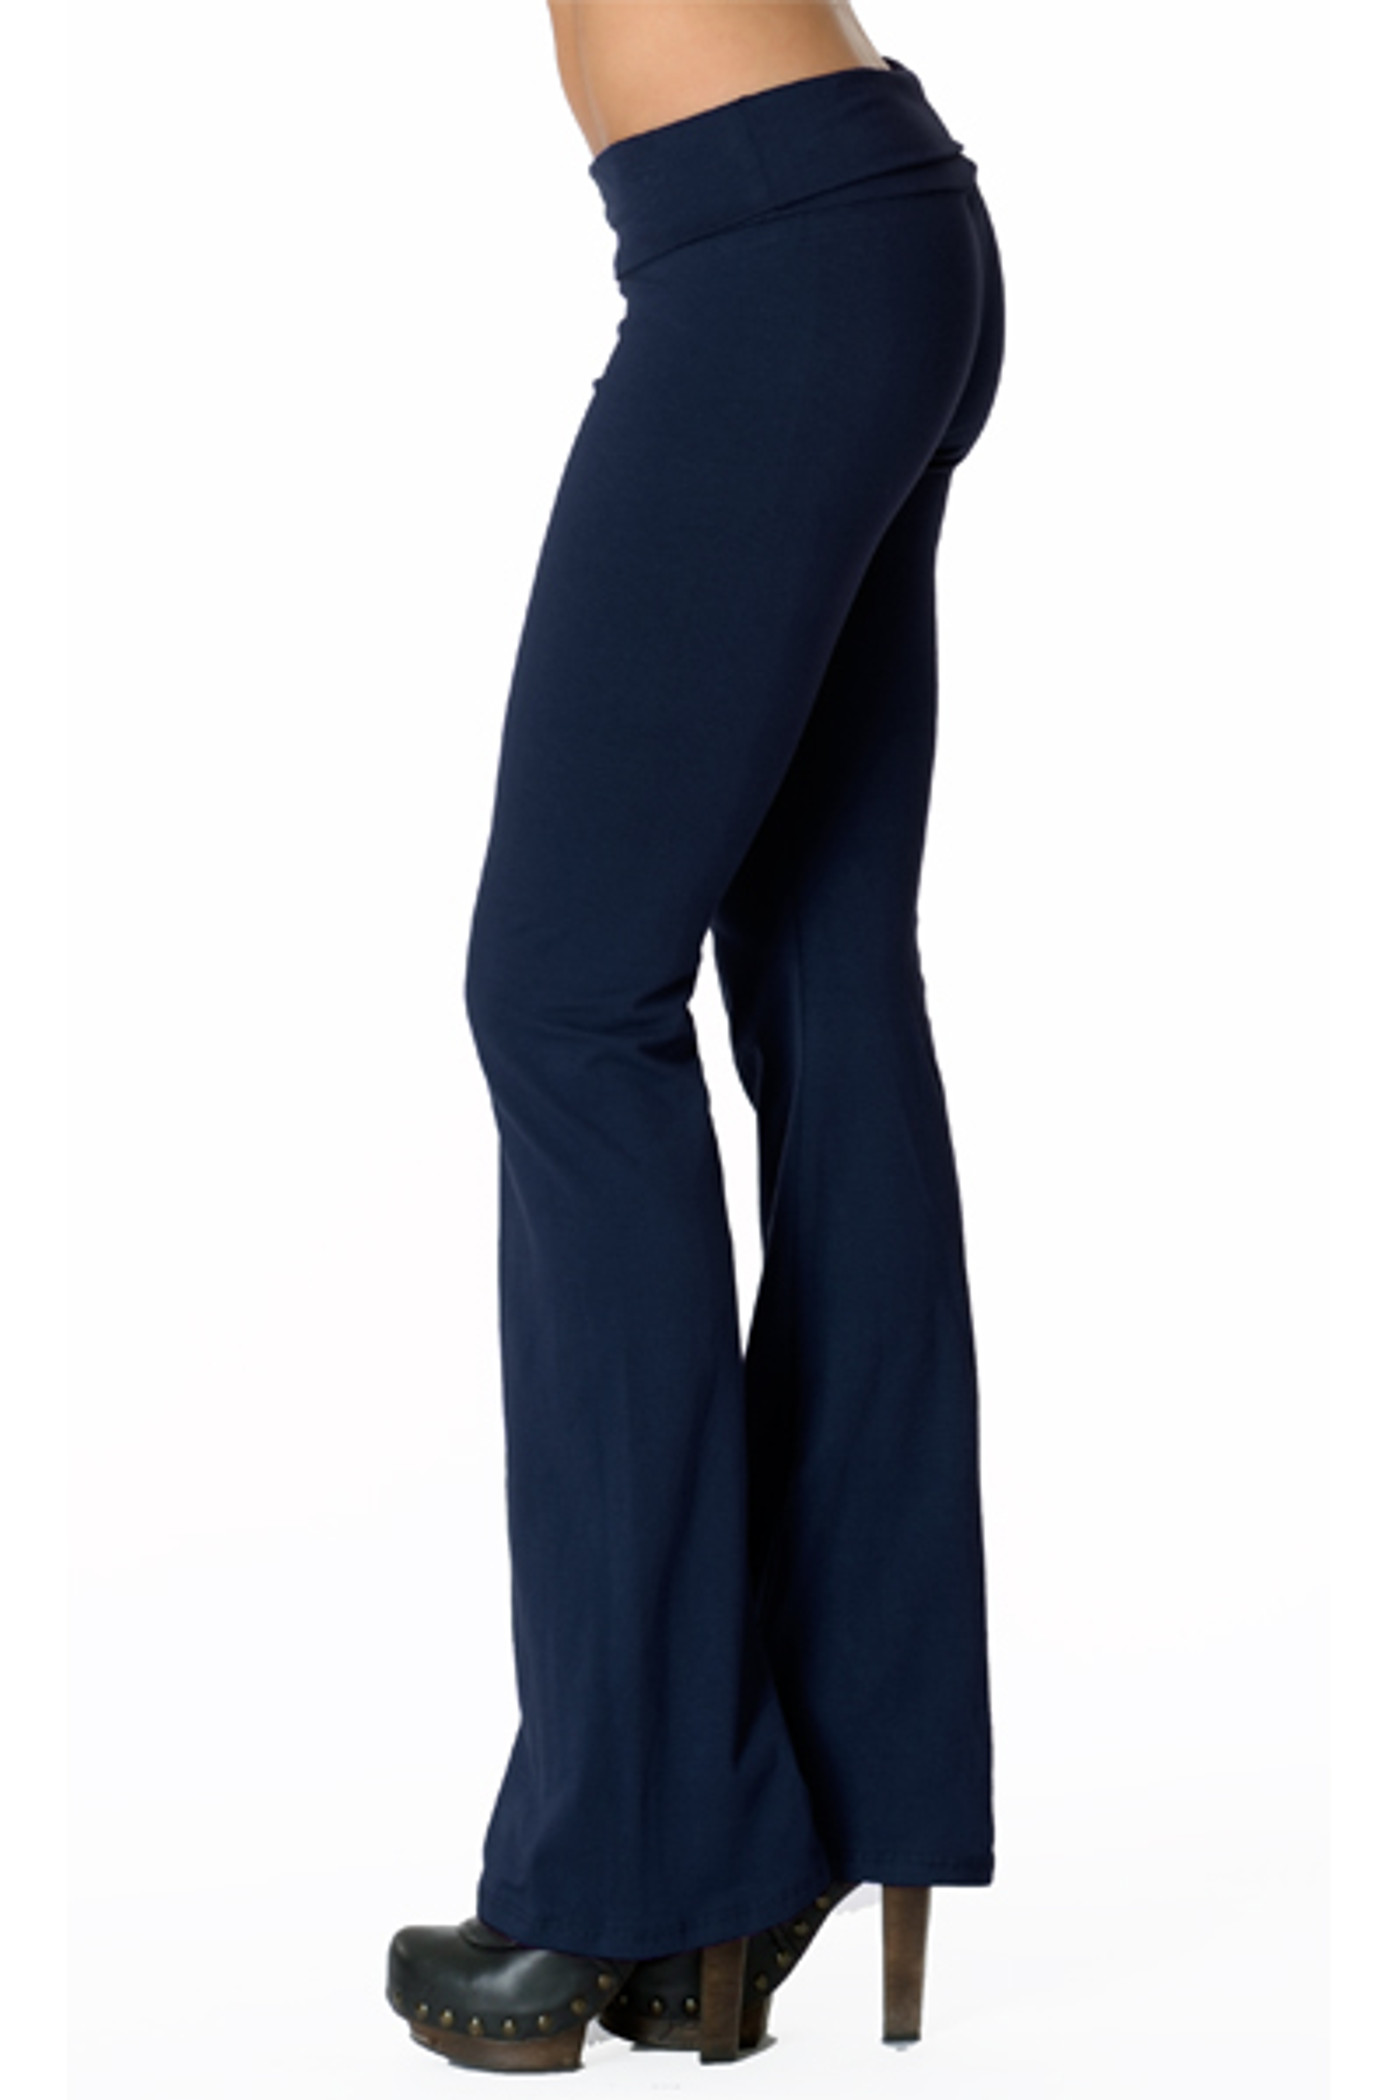 Fold Over Yoga Pants for Women Cotton Leggings Foldover High Waist Leggings  Plus Size (C6 F)